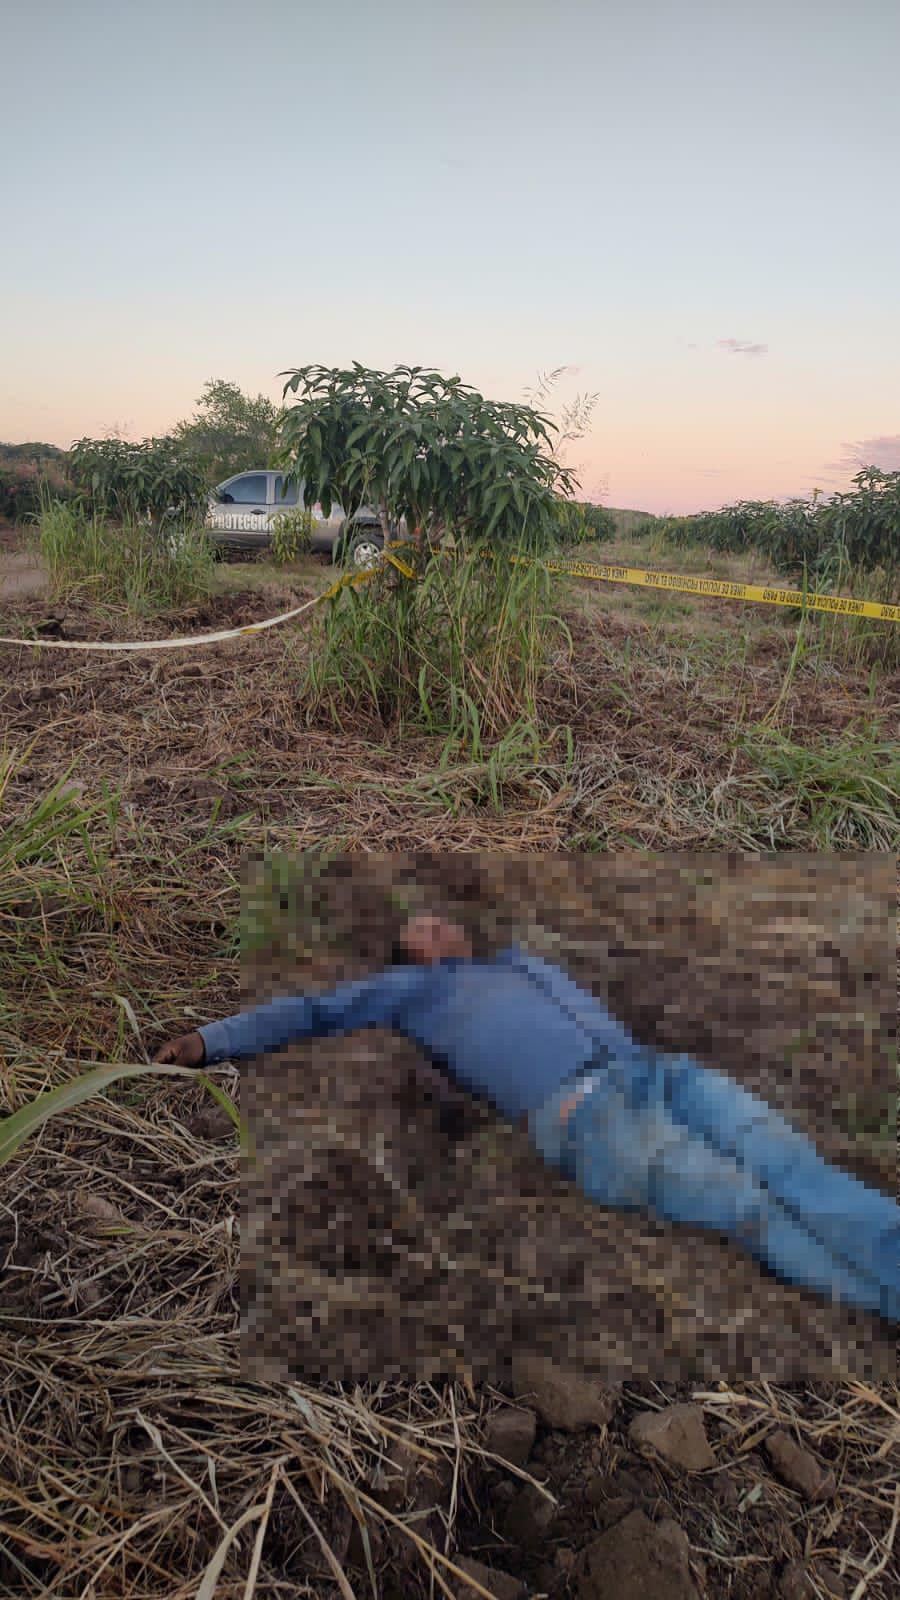 $!Hallan muerto a trabajador de la presa Santa María en huerta de Rosario tras sufrir un infarto